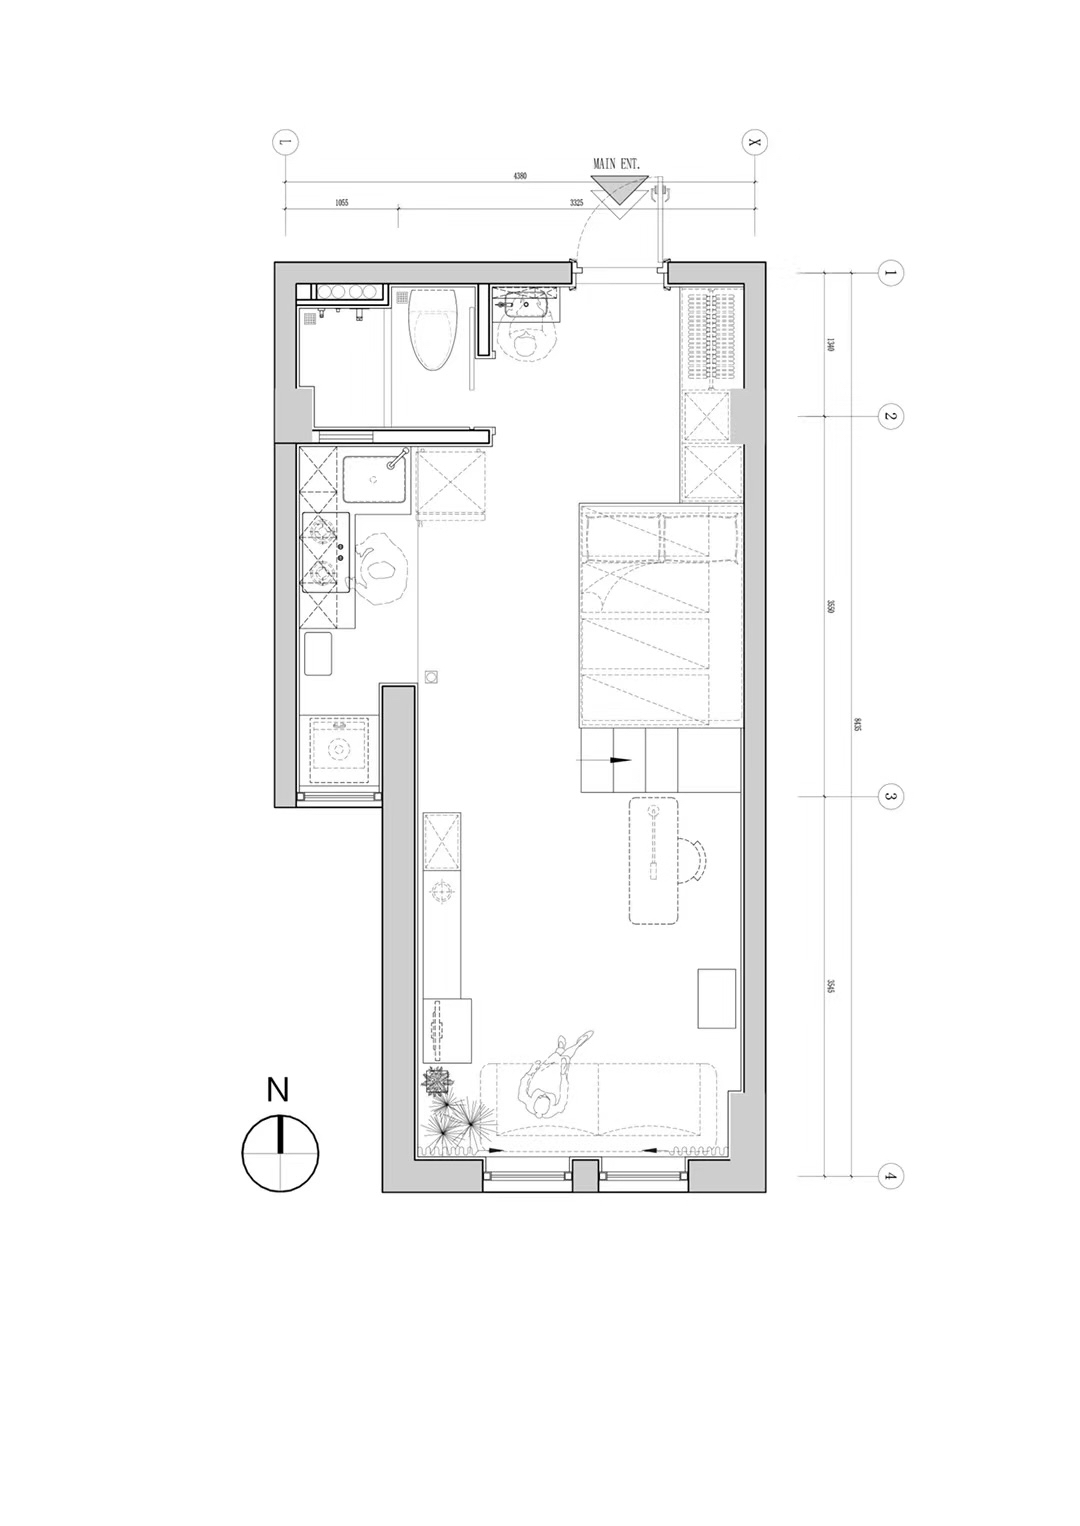 生活 日常 30平的家 设计图纸上线 房子是三年前设计的,当初的图纸找